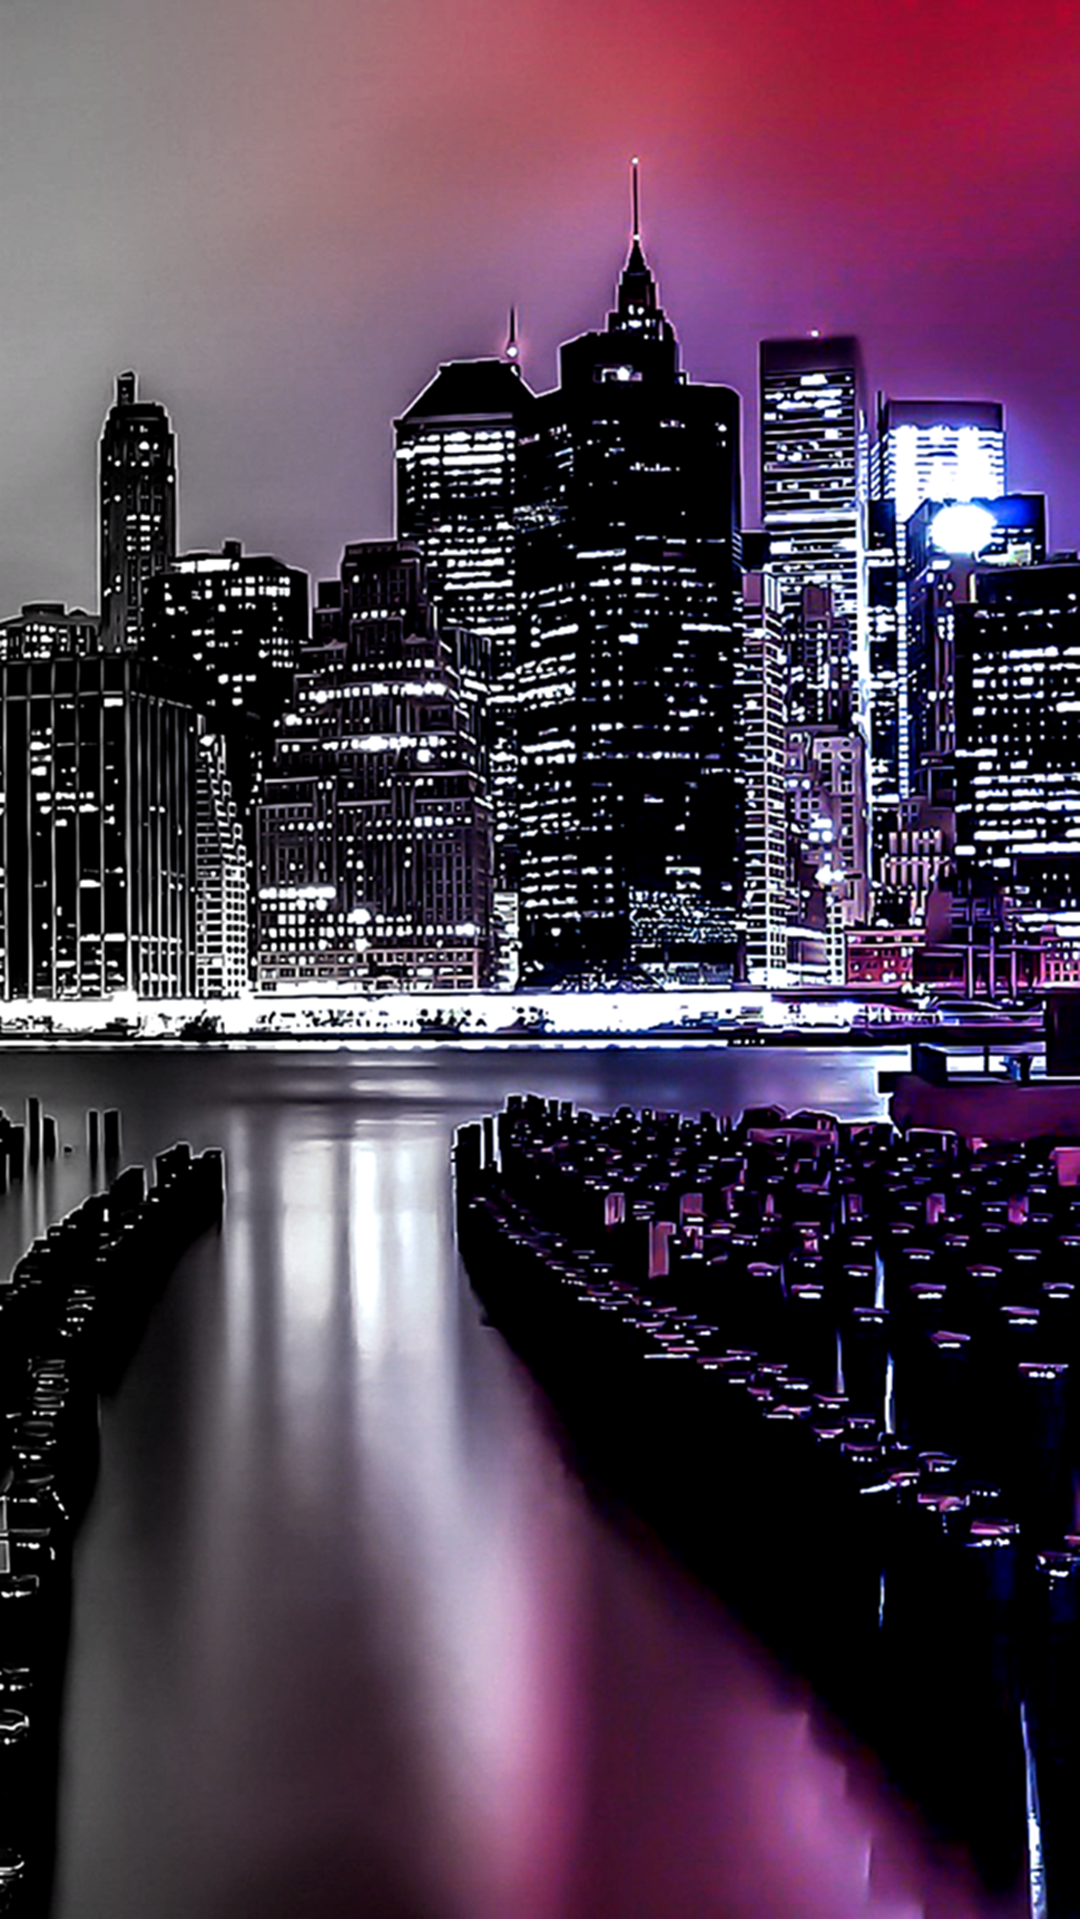 Night City Lights City lights at night City wallpaper Night city